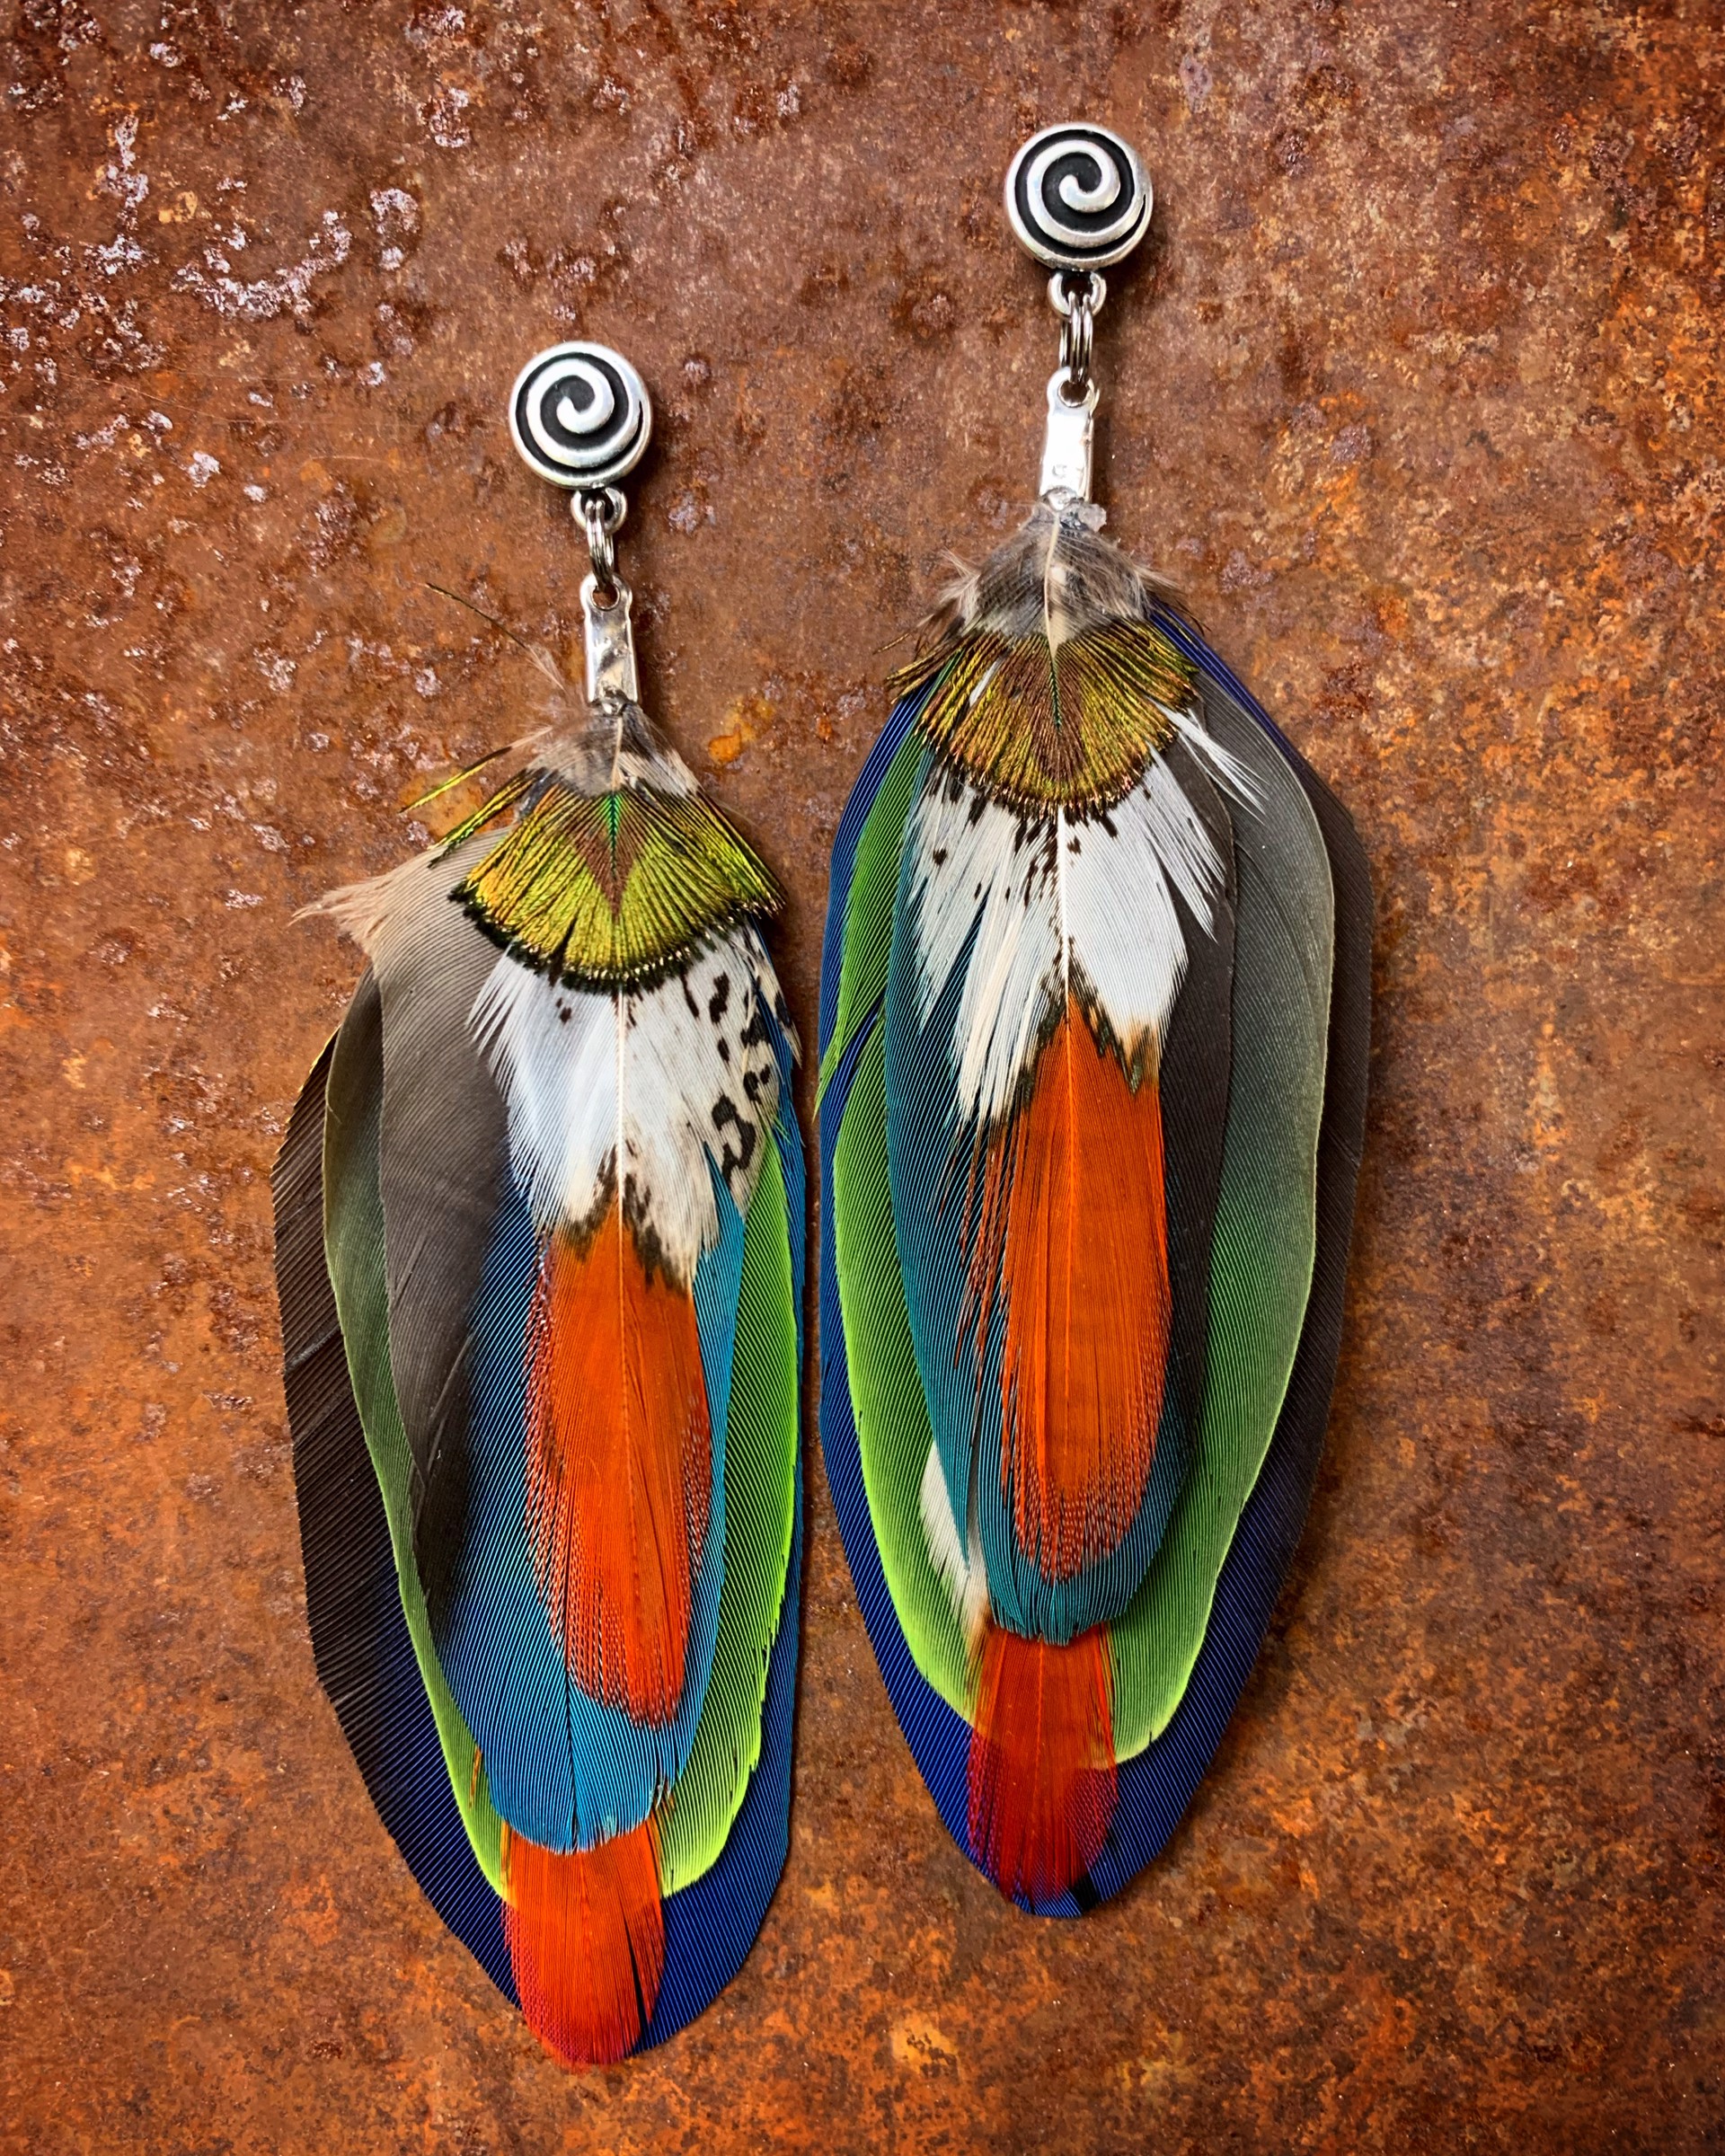 K519 Parrot Earrings by Kelly Ormsby